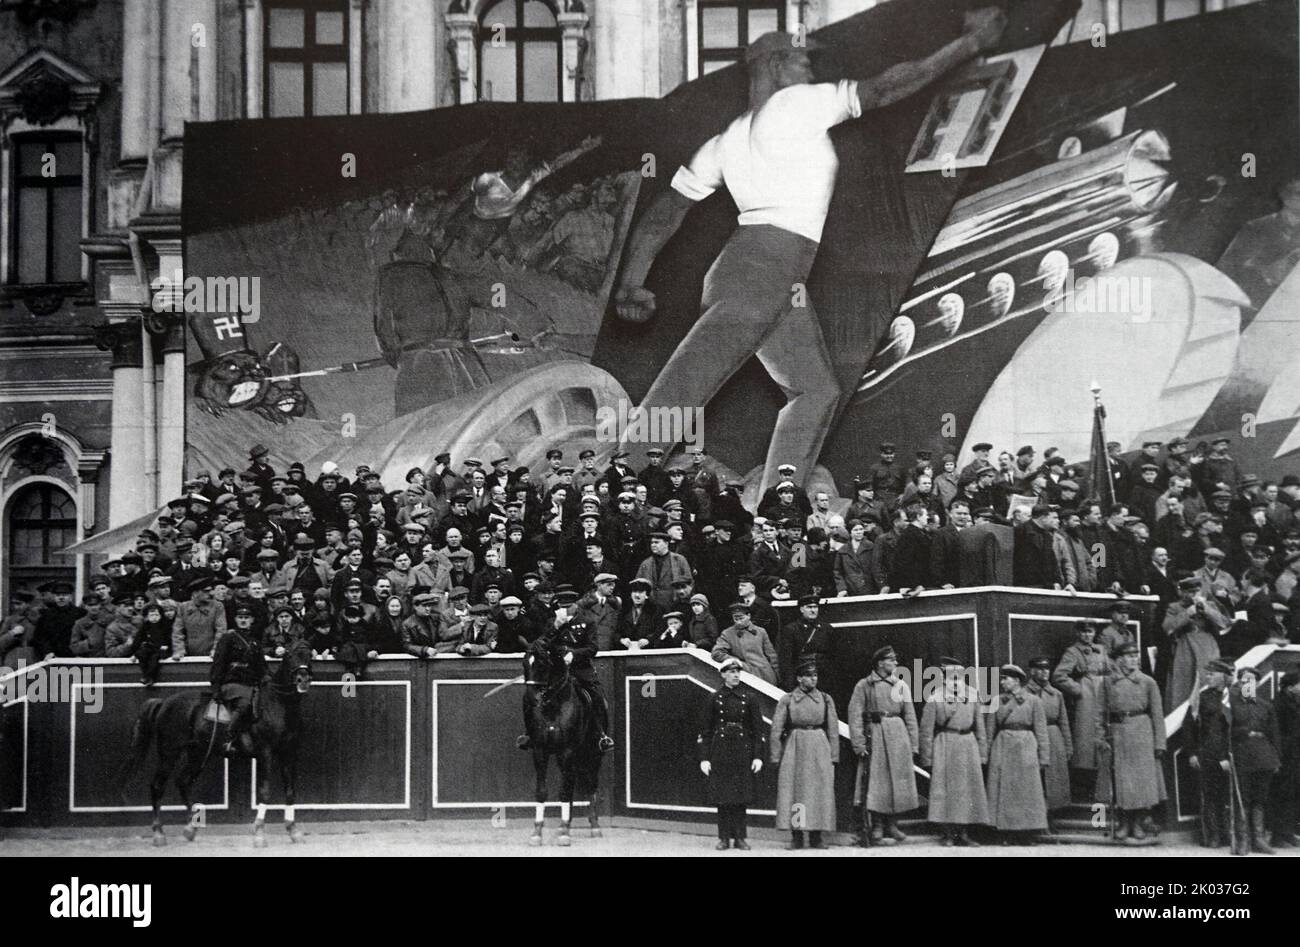 Eine dekorative Installation, die am 1. Mai 1930 das Podium auf dem Uritsky-Platz in Leningrad schmückte. Entworfen von einem Team von Studenten des Kunstvereins VKHUTEIN. Stockfoto